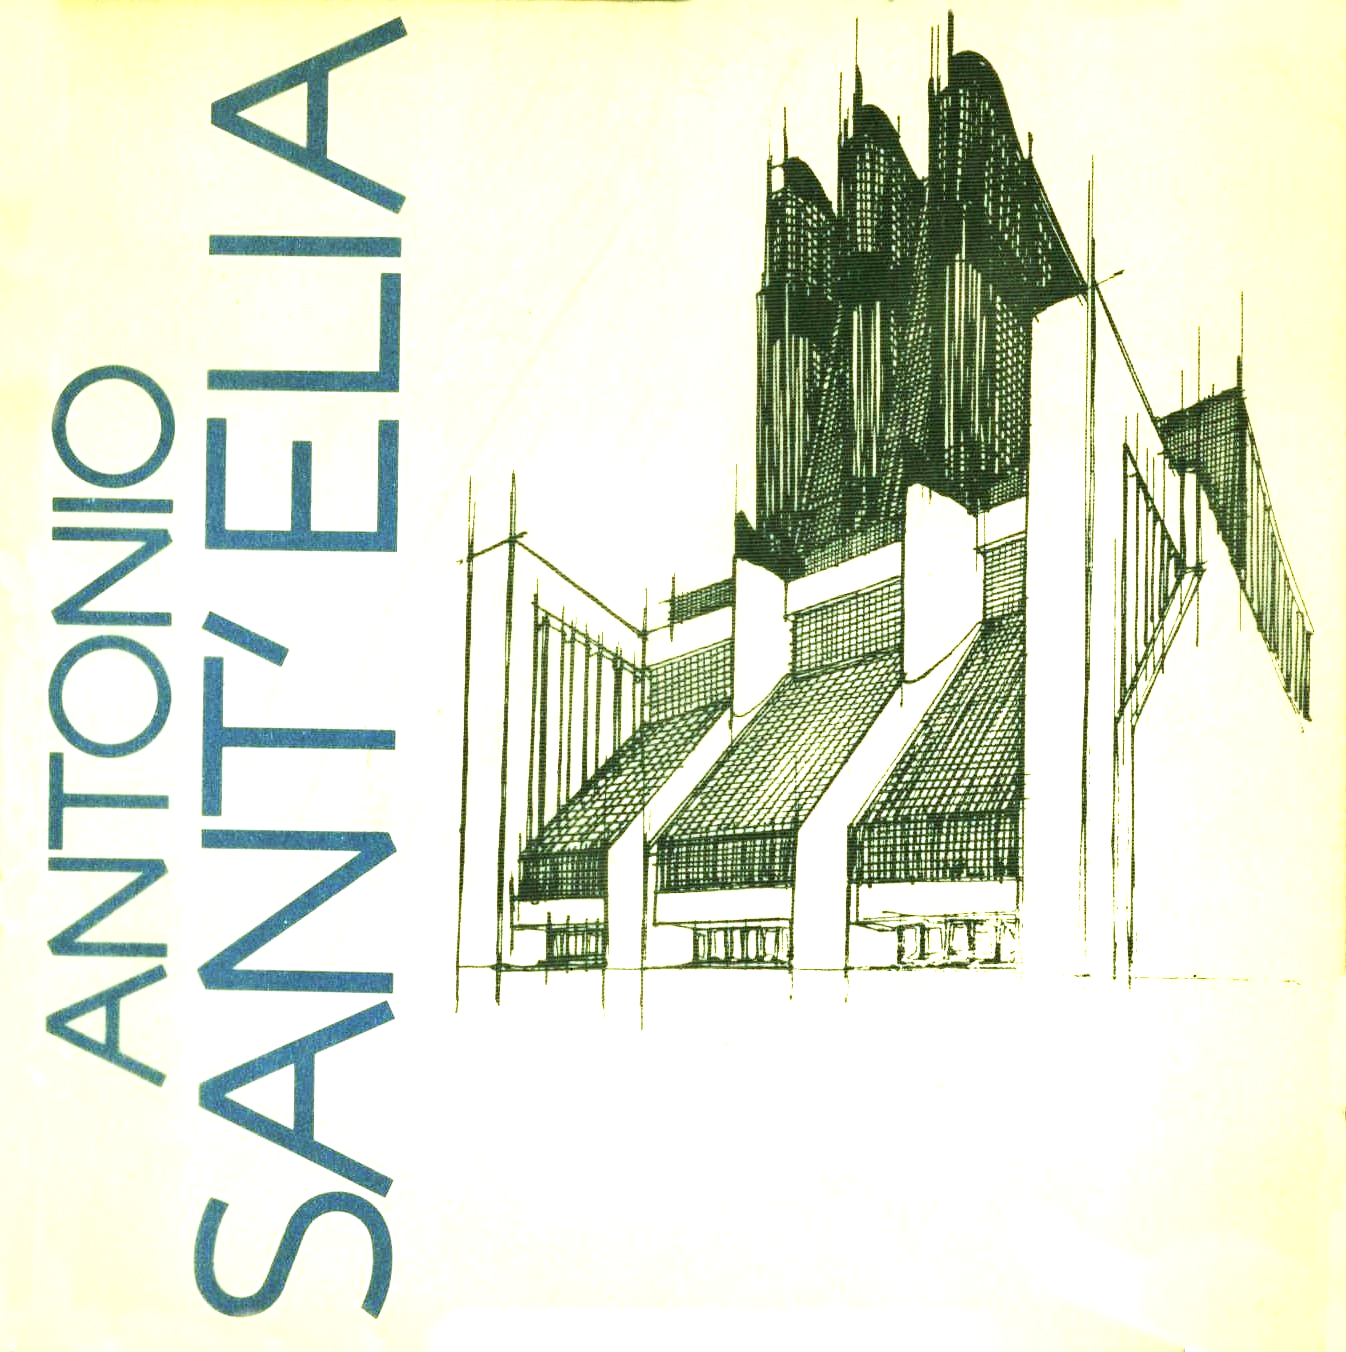 Antonio Sant’Elia